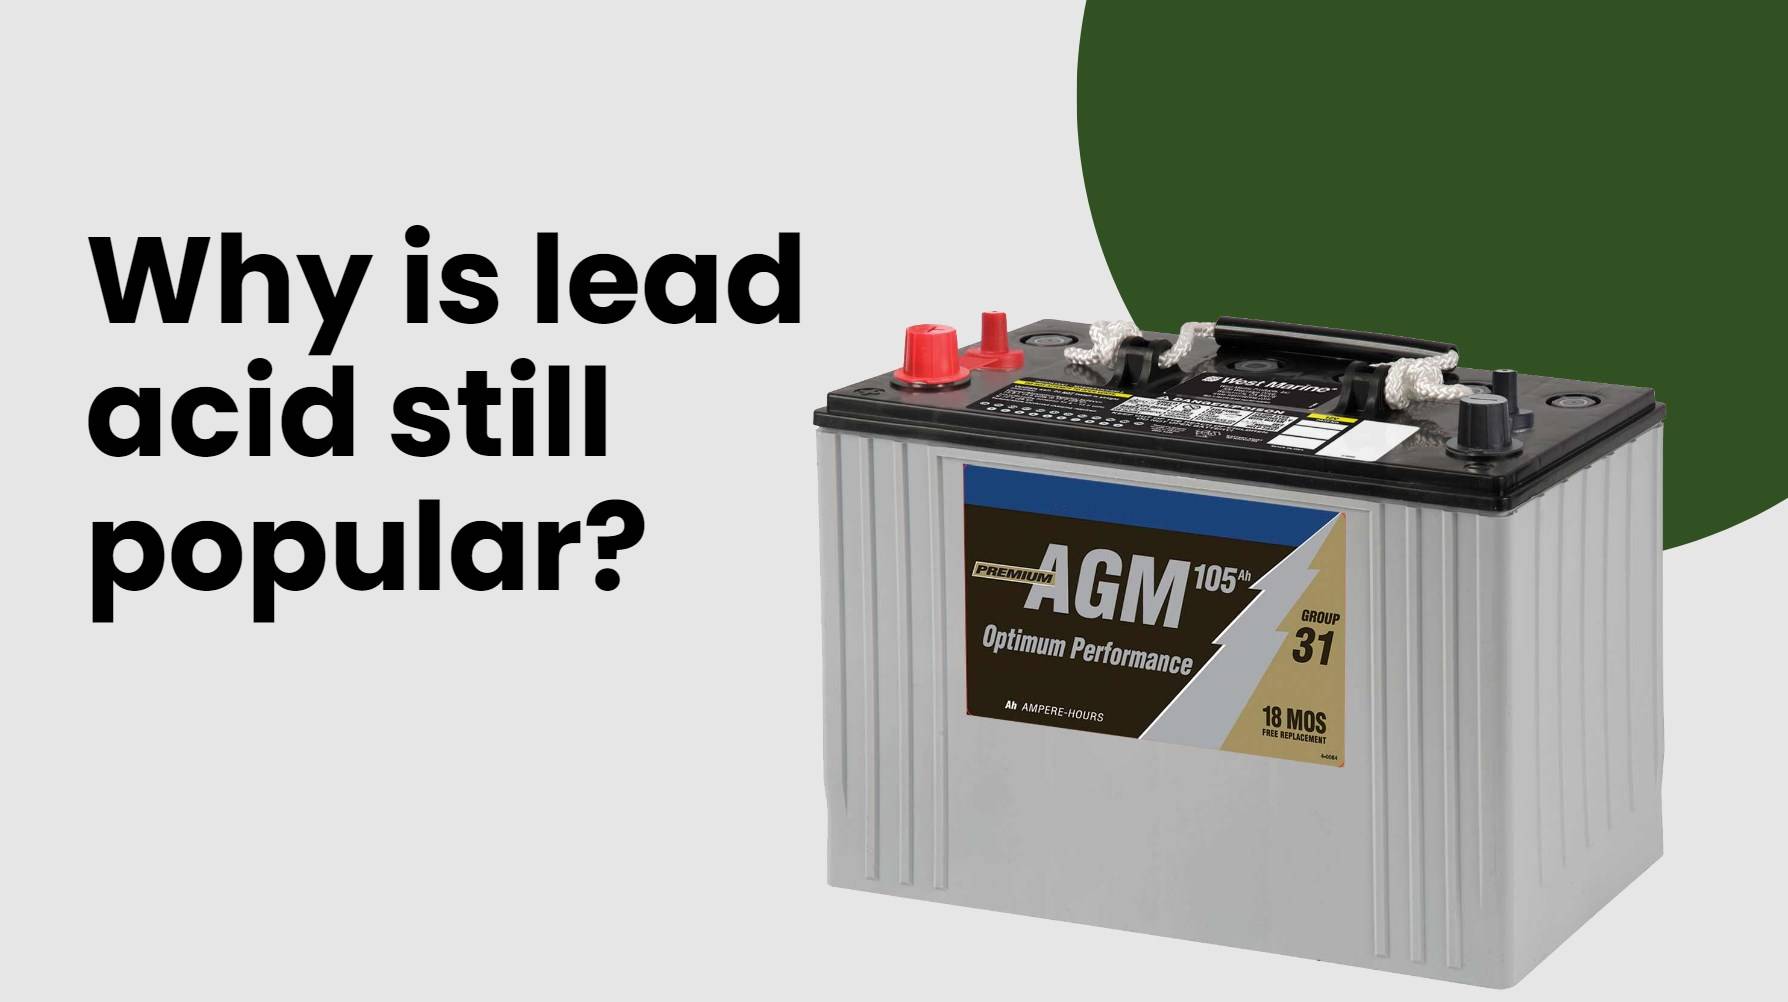 Why is lead acid still popular?